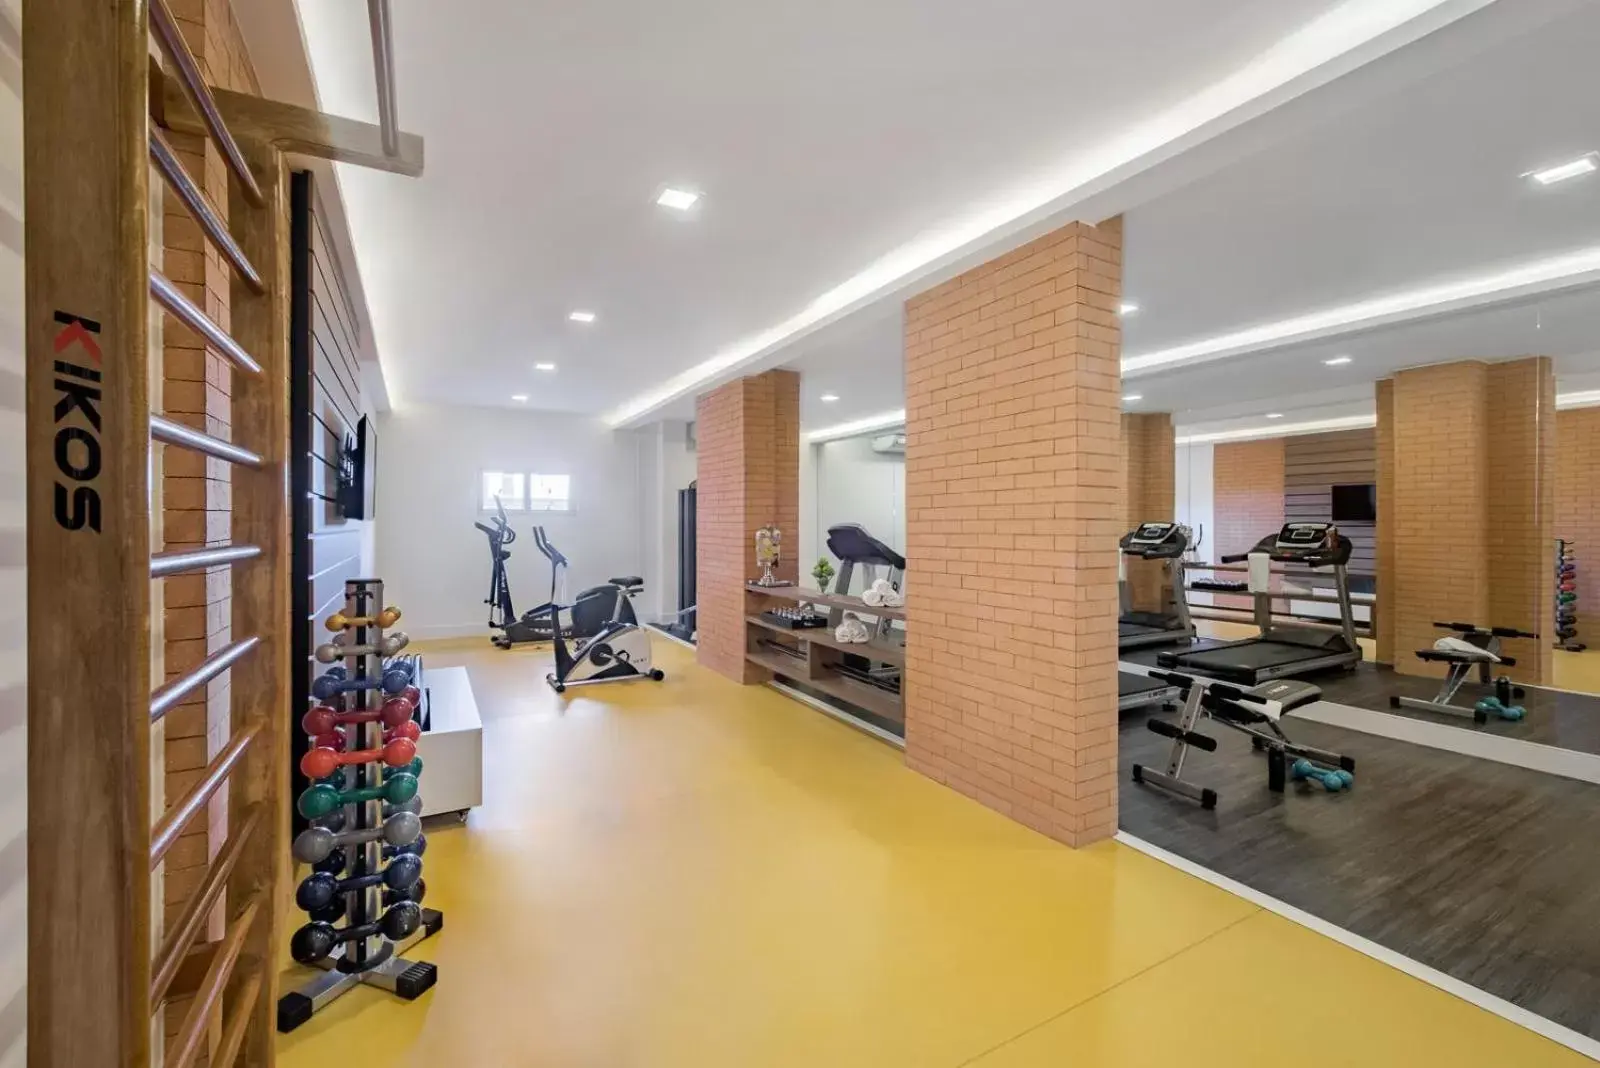 Fitness centre/facilities, Fitness Center/Facilities in Intercity Ribeirão Preto